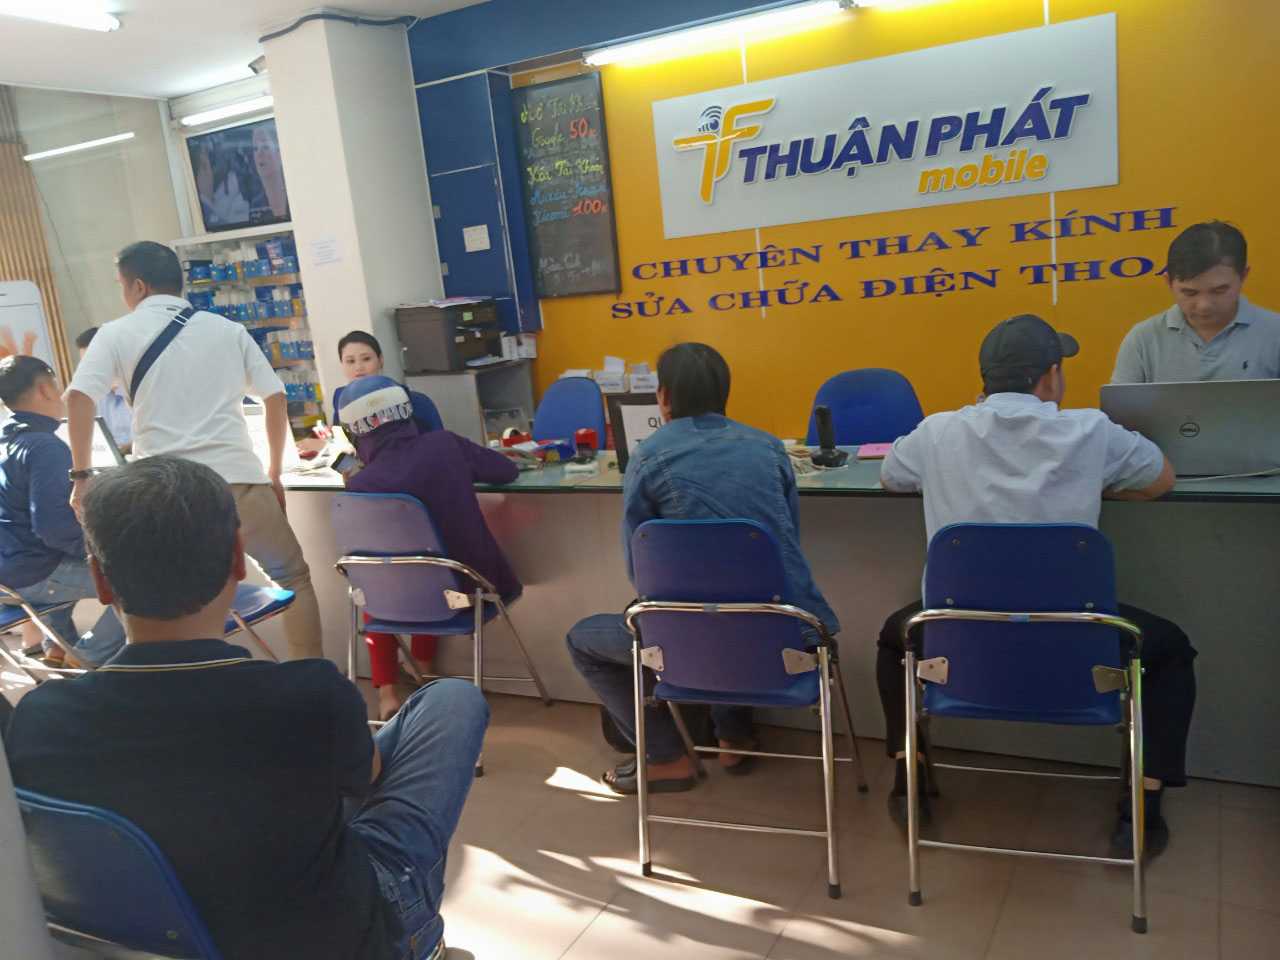 Khách hàng sửa chữa điện thoại ở Thuận Phát Mobile